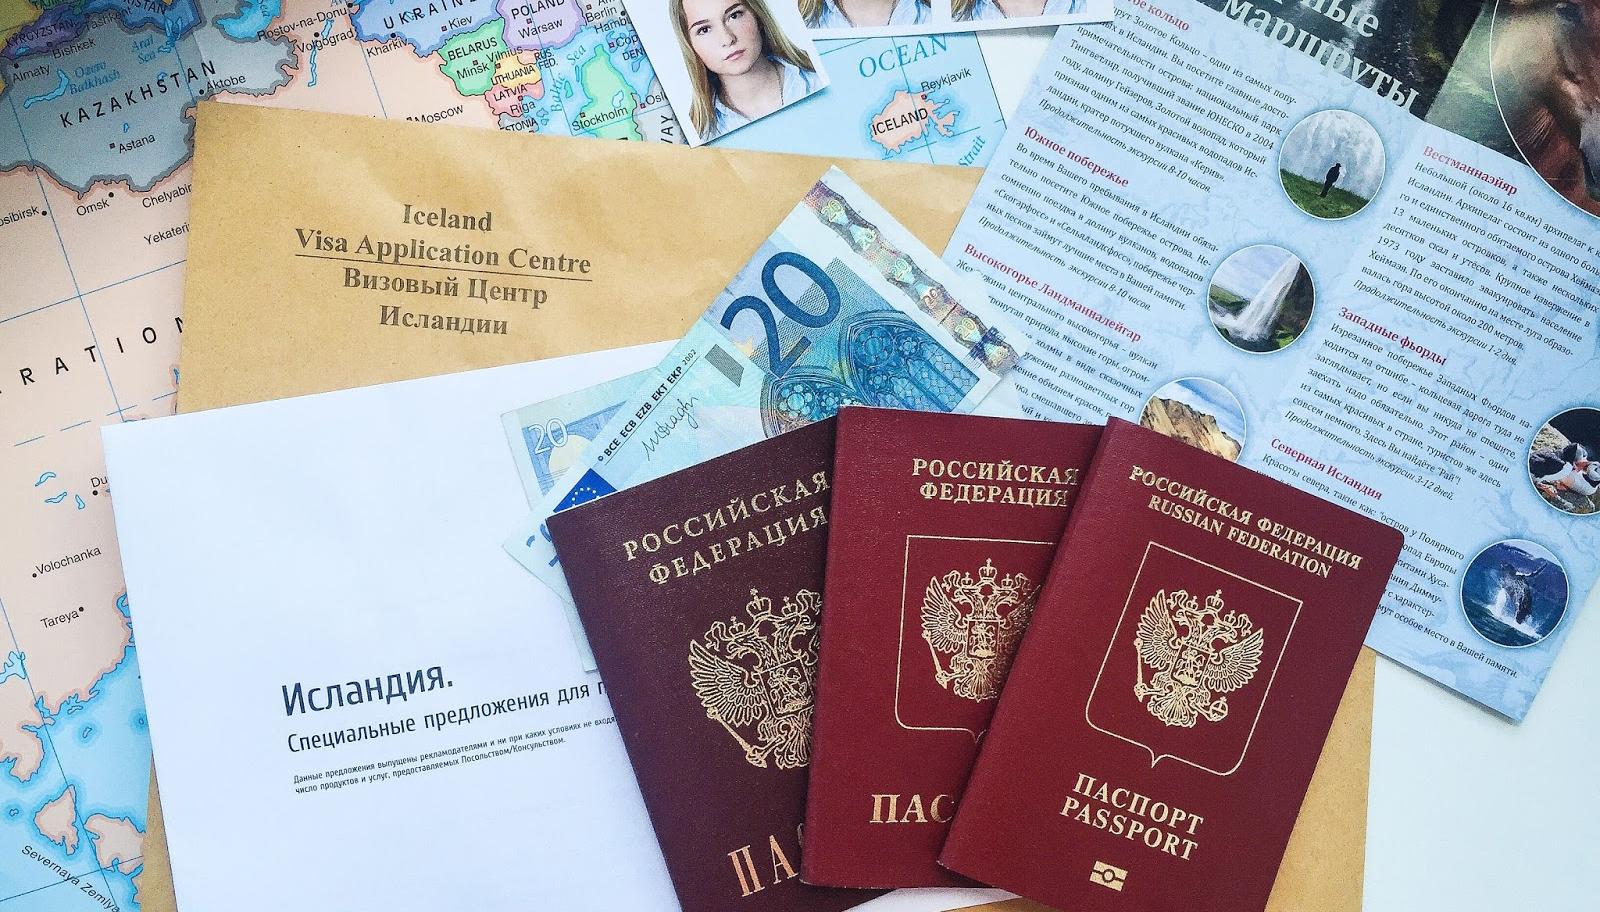 Россия изменила правила получения визы для граждан Прибалтики Политика,Россия,Прибалтика,Россия,Туризм,Электронная виза